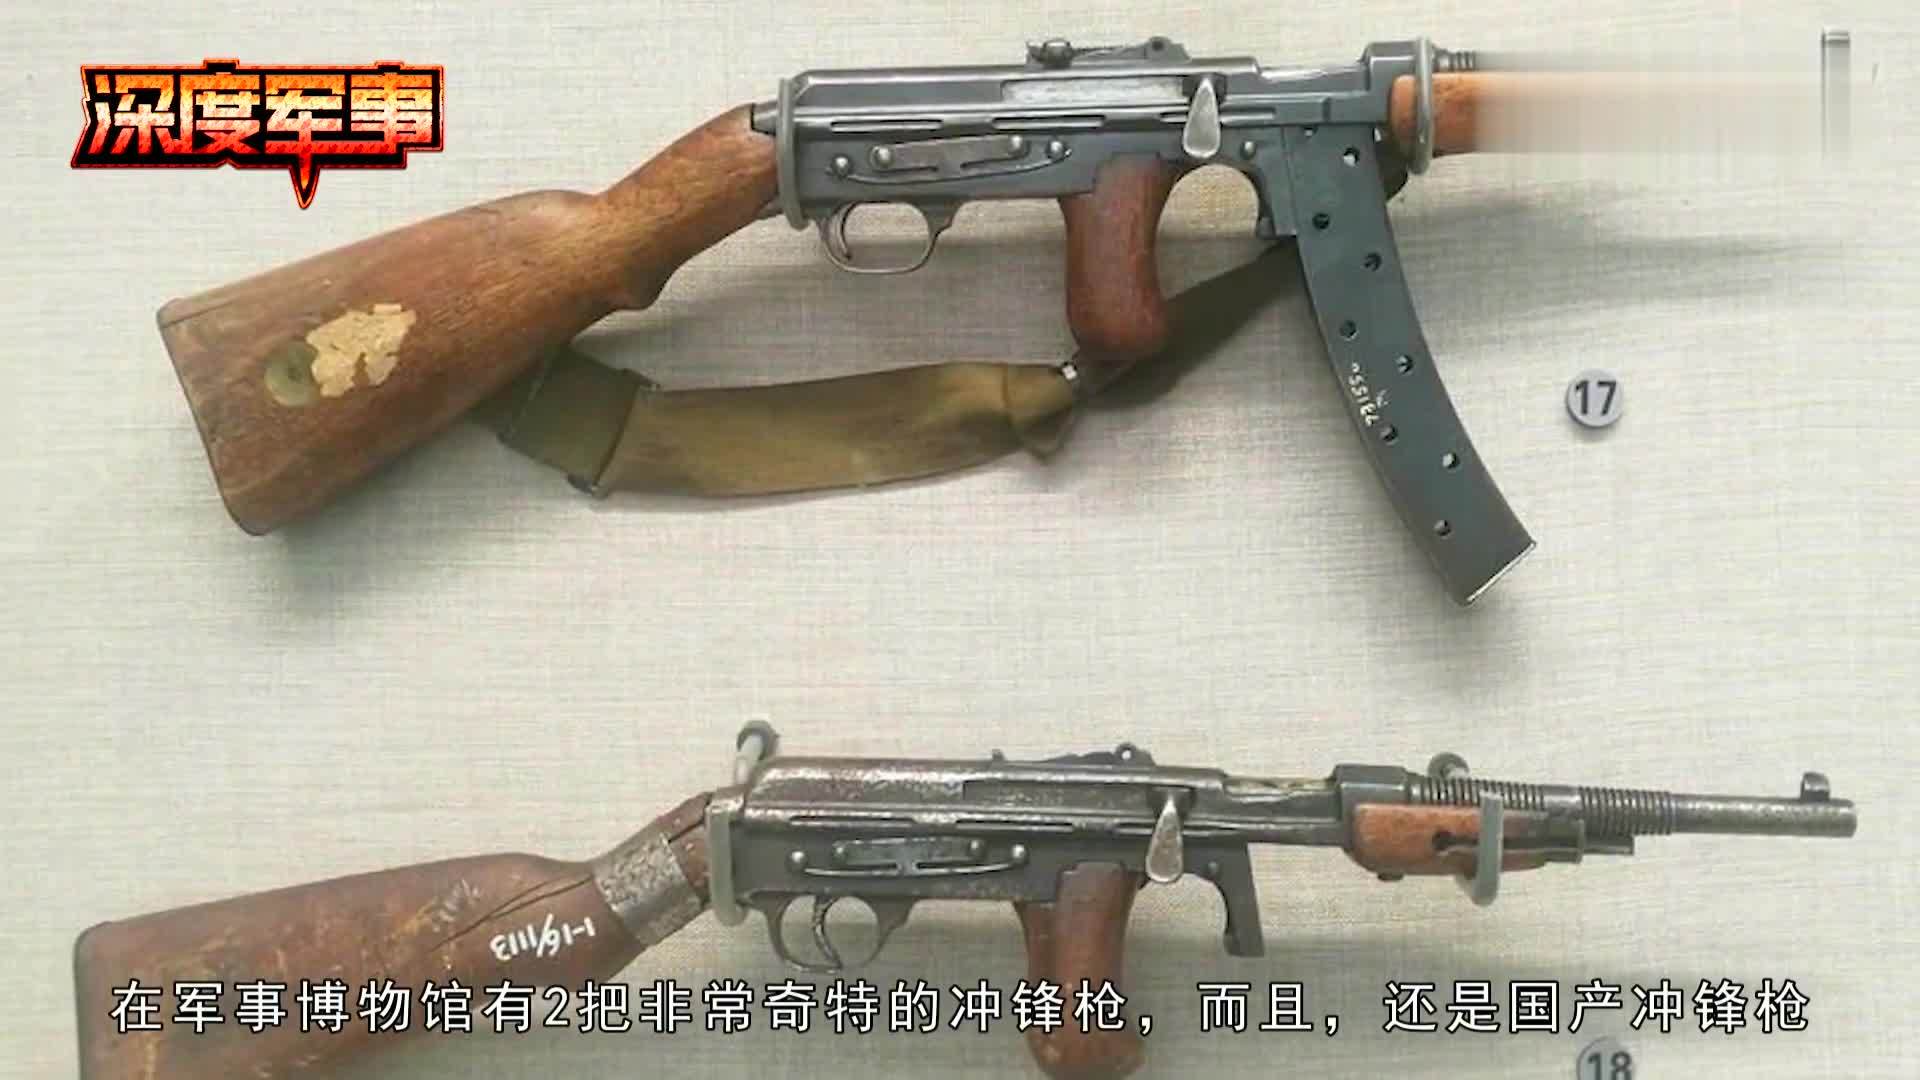 抗战中国独有武器,驳壳枪冲锋枪合体日军承认这才是杀人弹雨